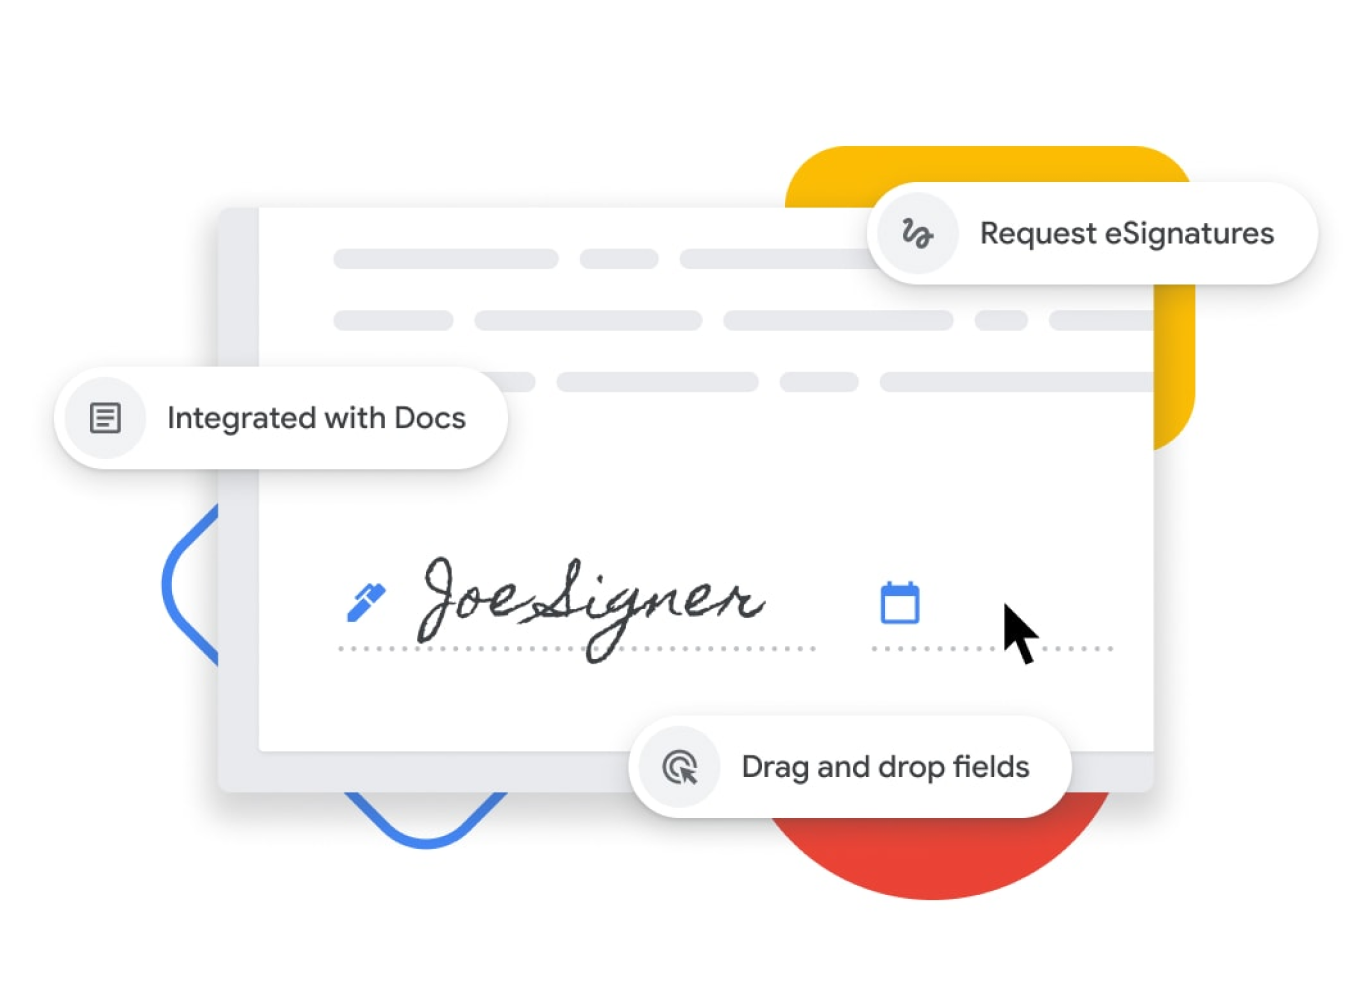 Vizuális ábrázolás az elektronikus aláírás funkcióról, amely lehetővé teszi a felhasználók számára a név- és dátummezők áthúzását és a Google Dokumentumokba való integrálását. 